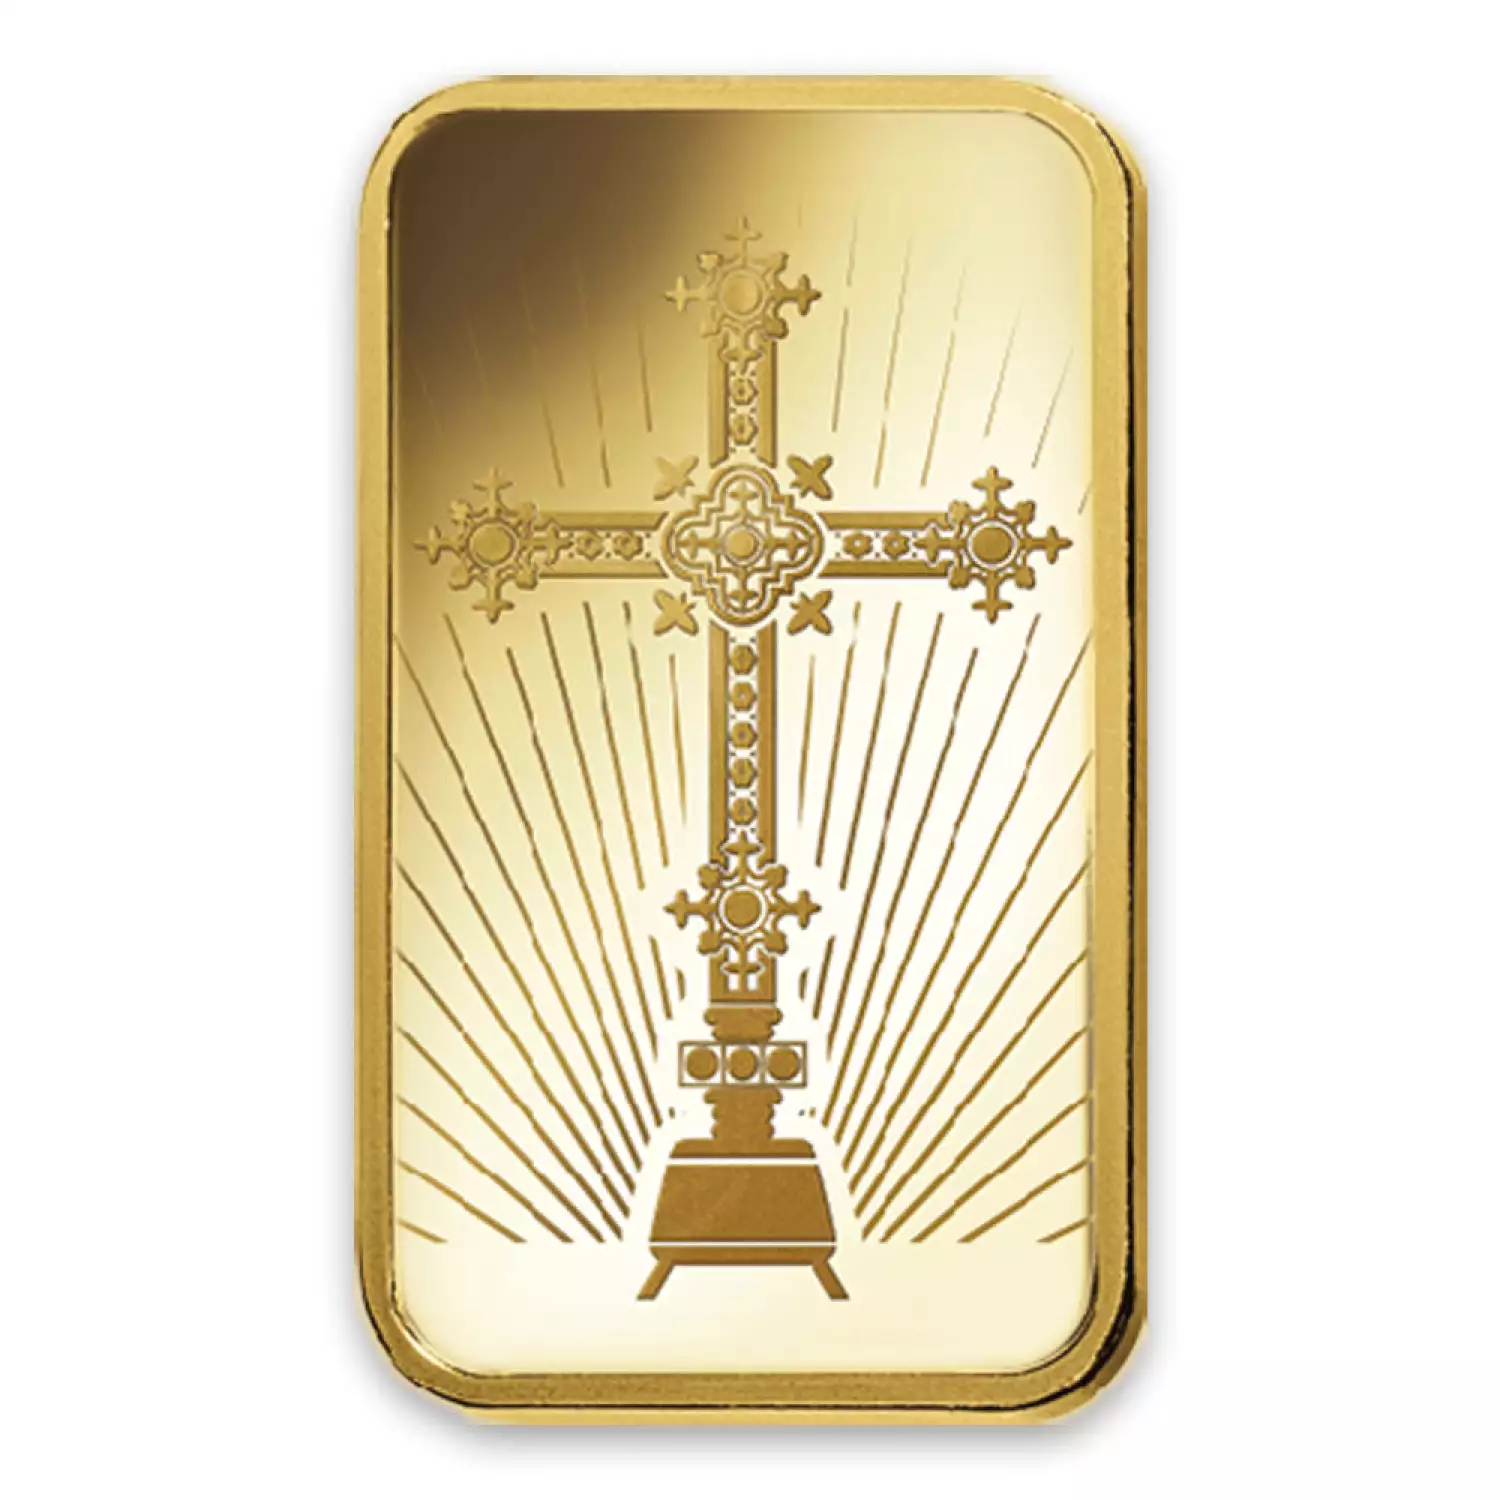 1oz PAMP Gold Bar - Romanesque Cross